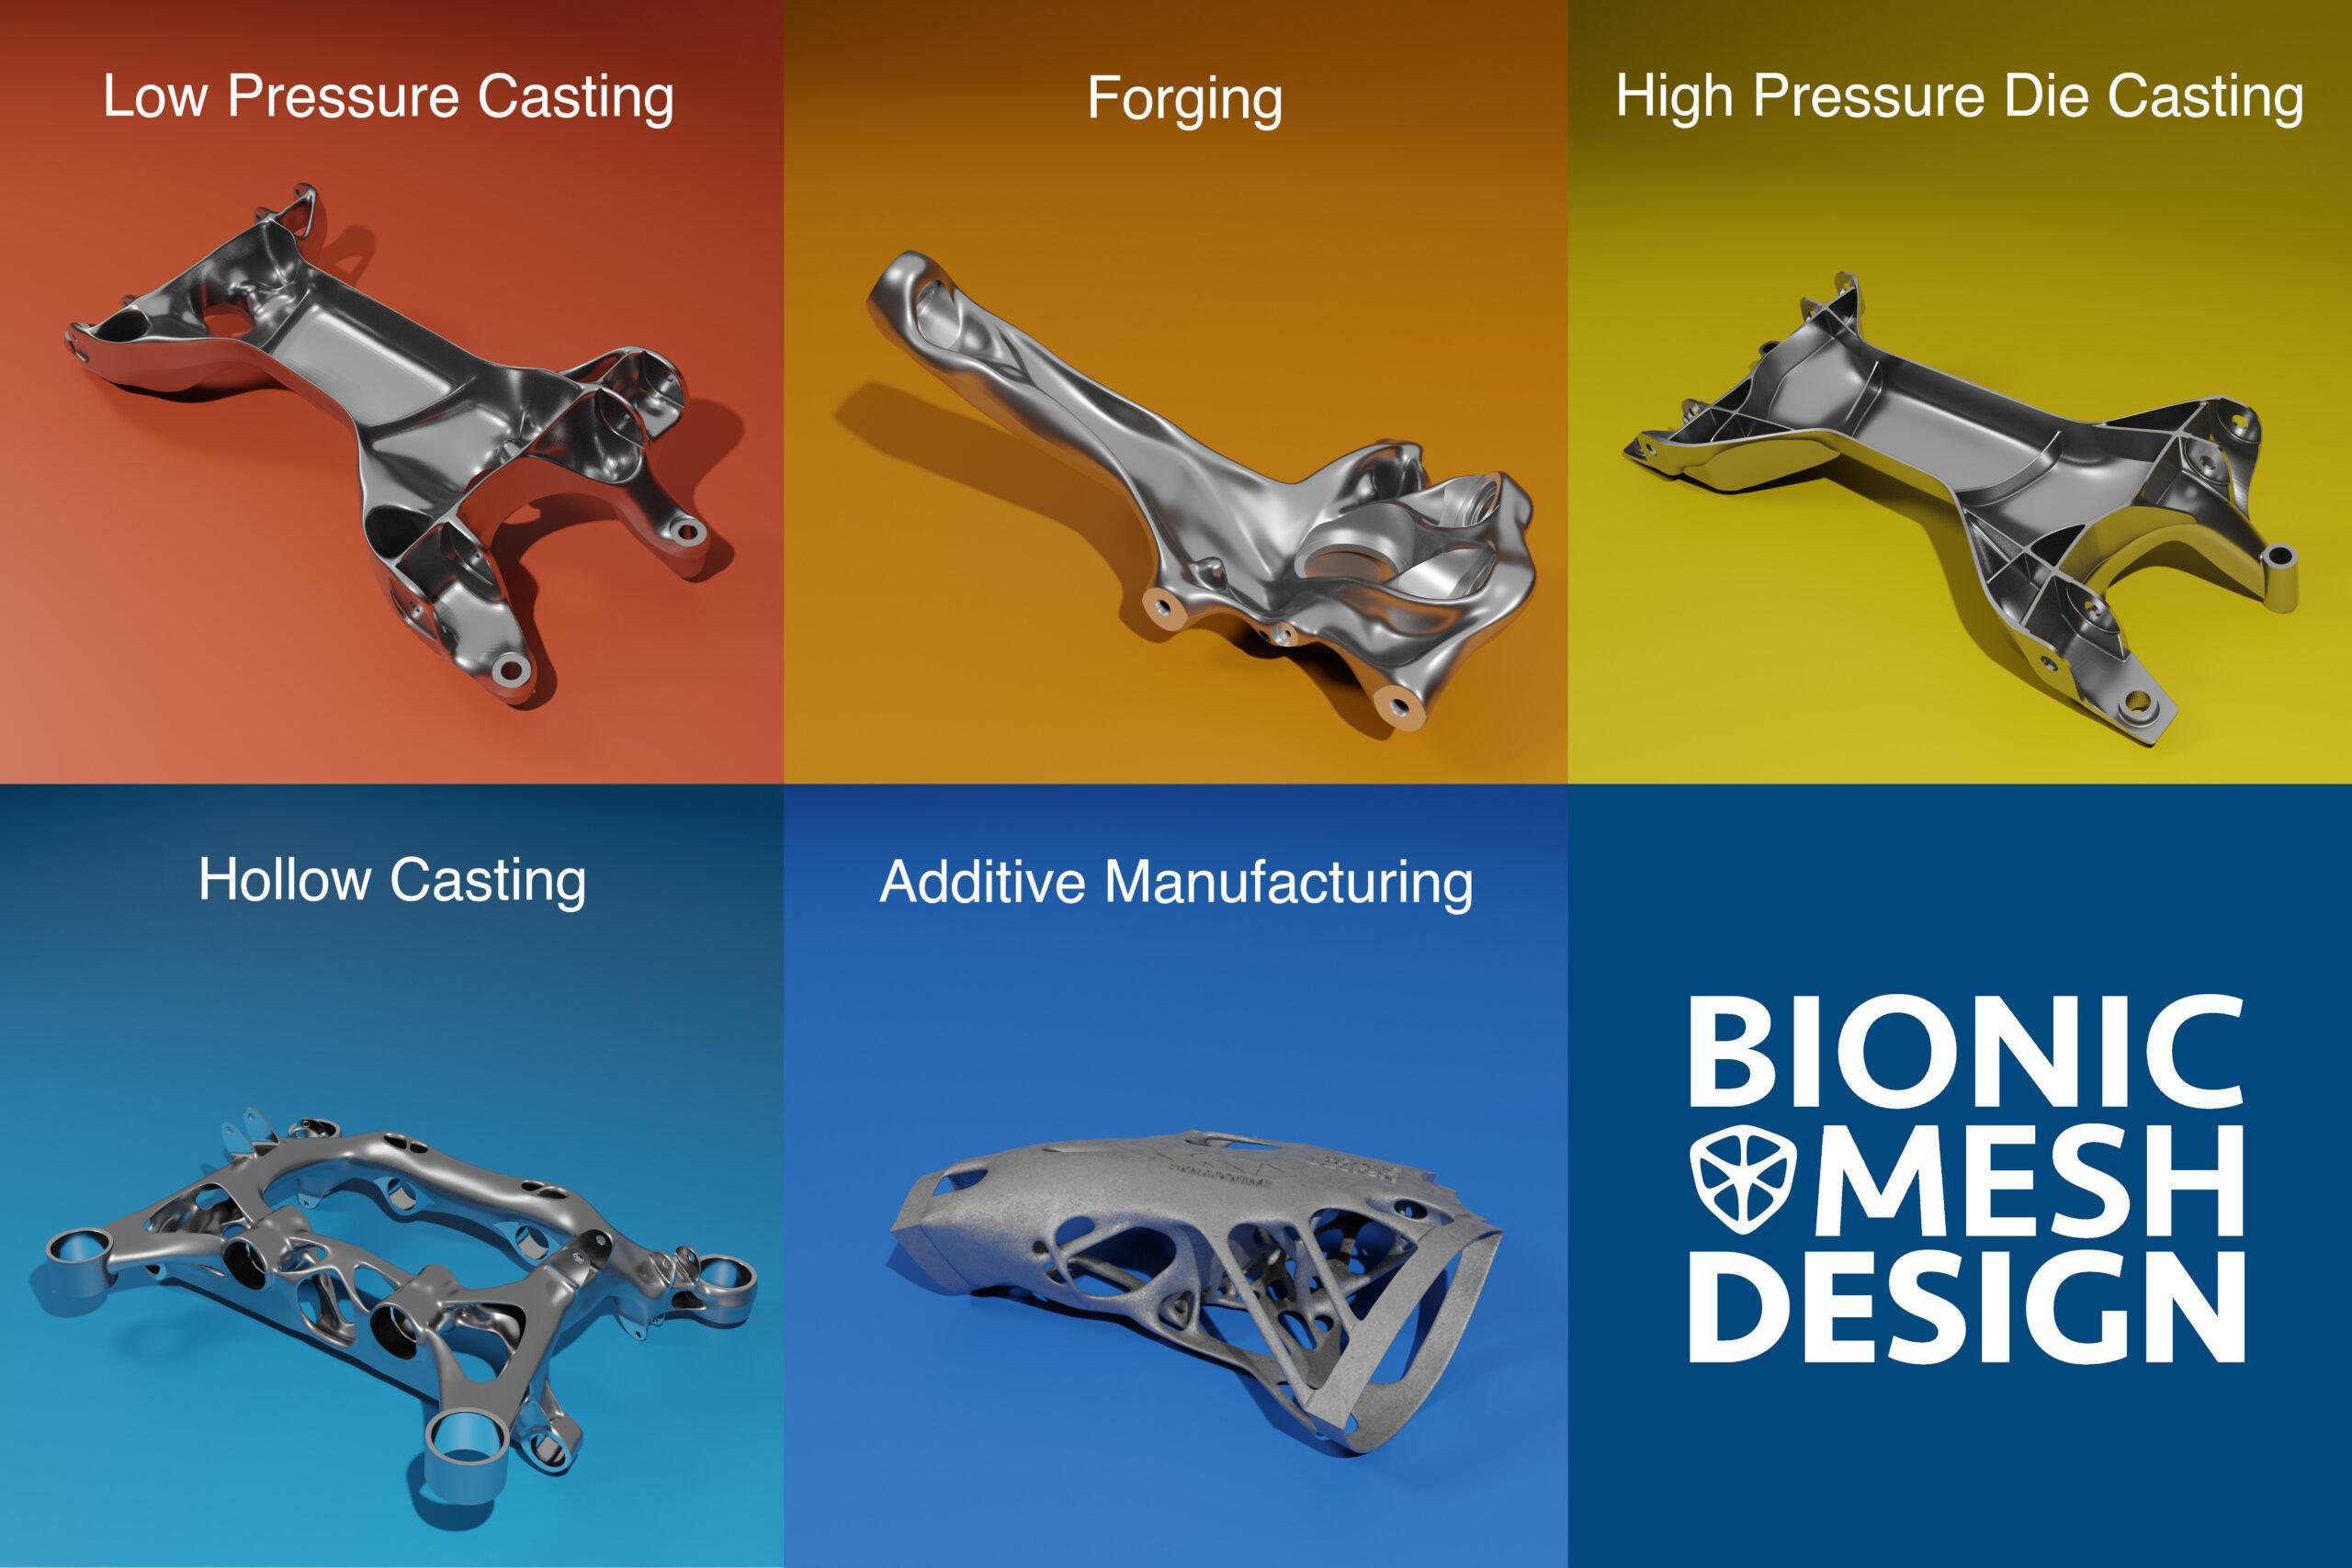 bionics design